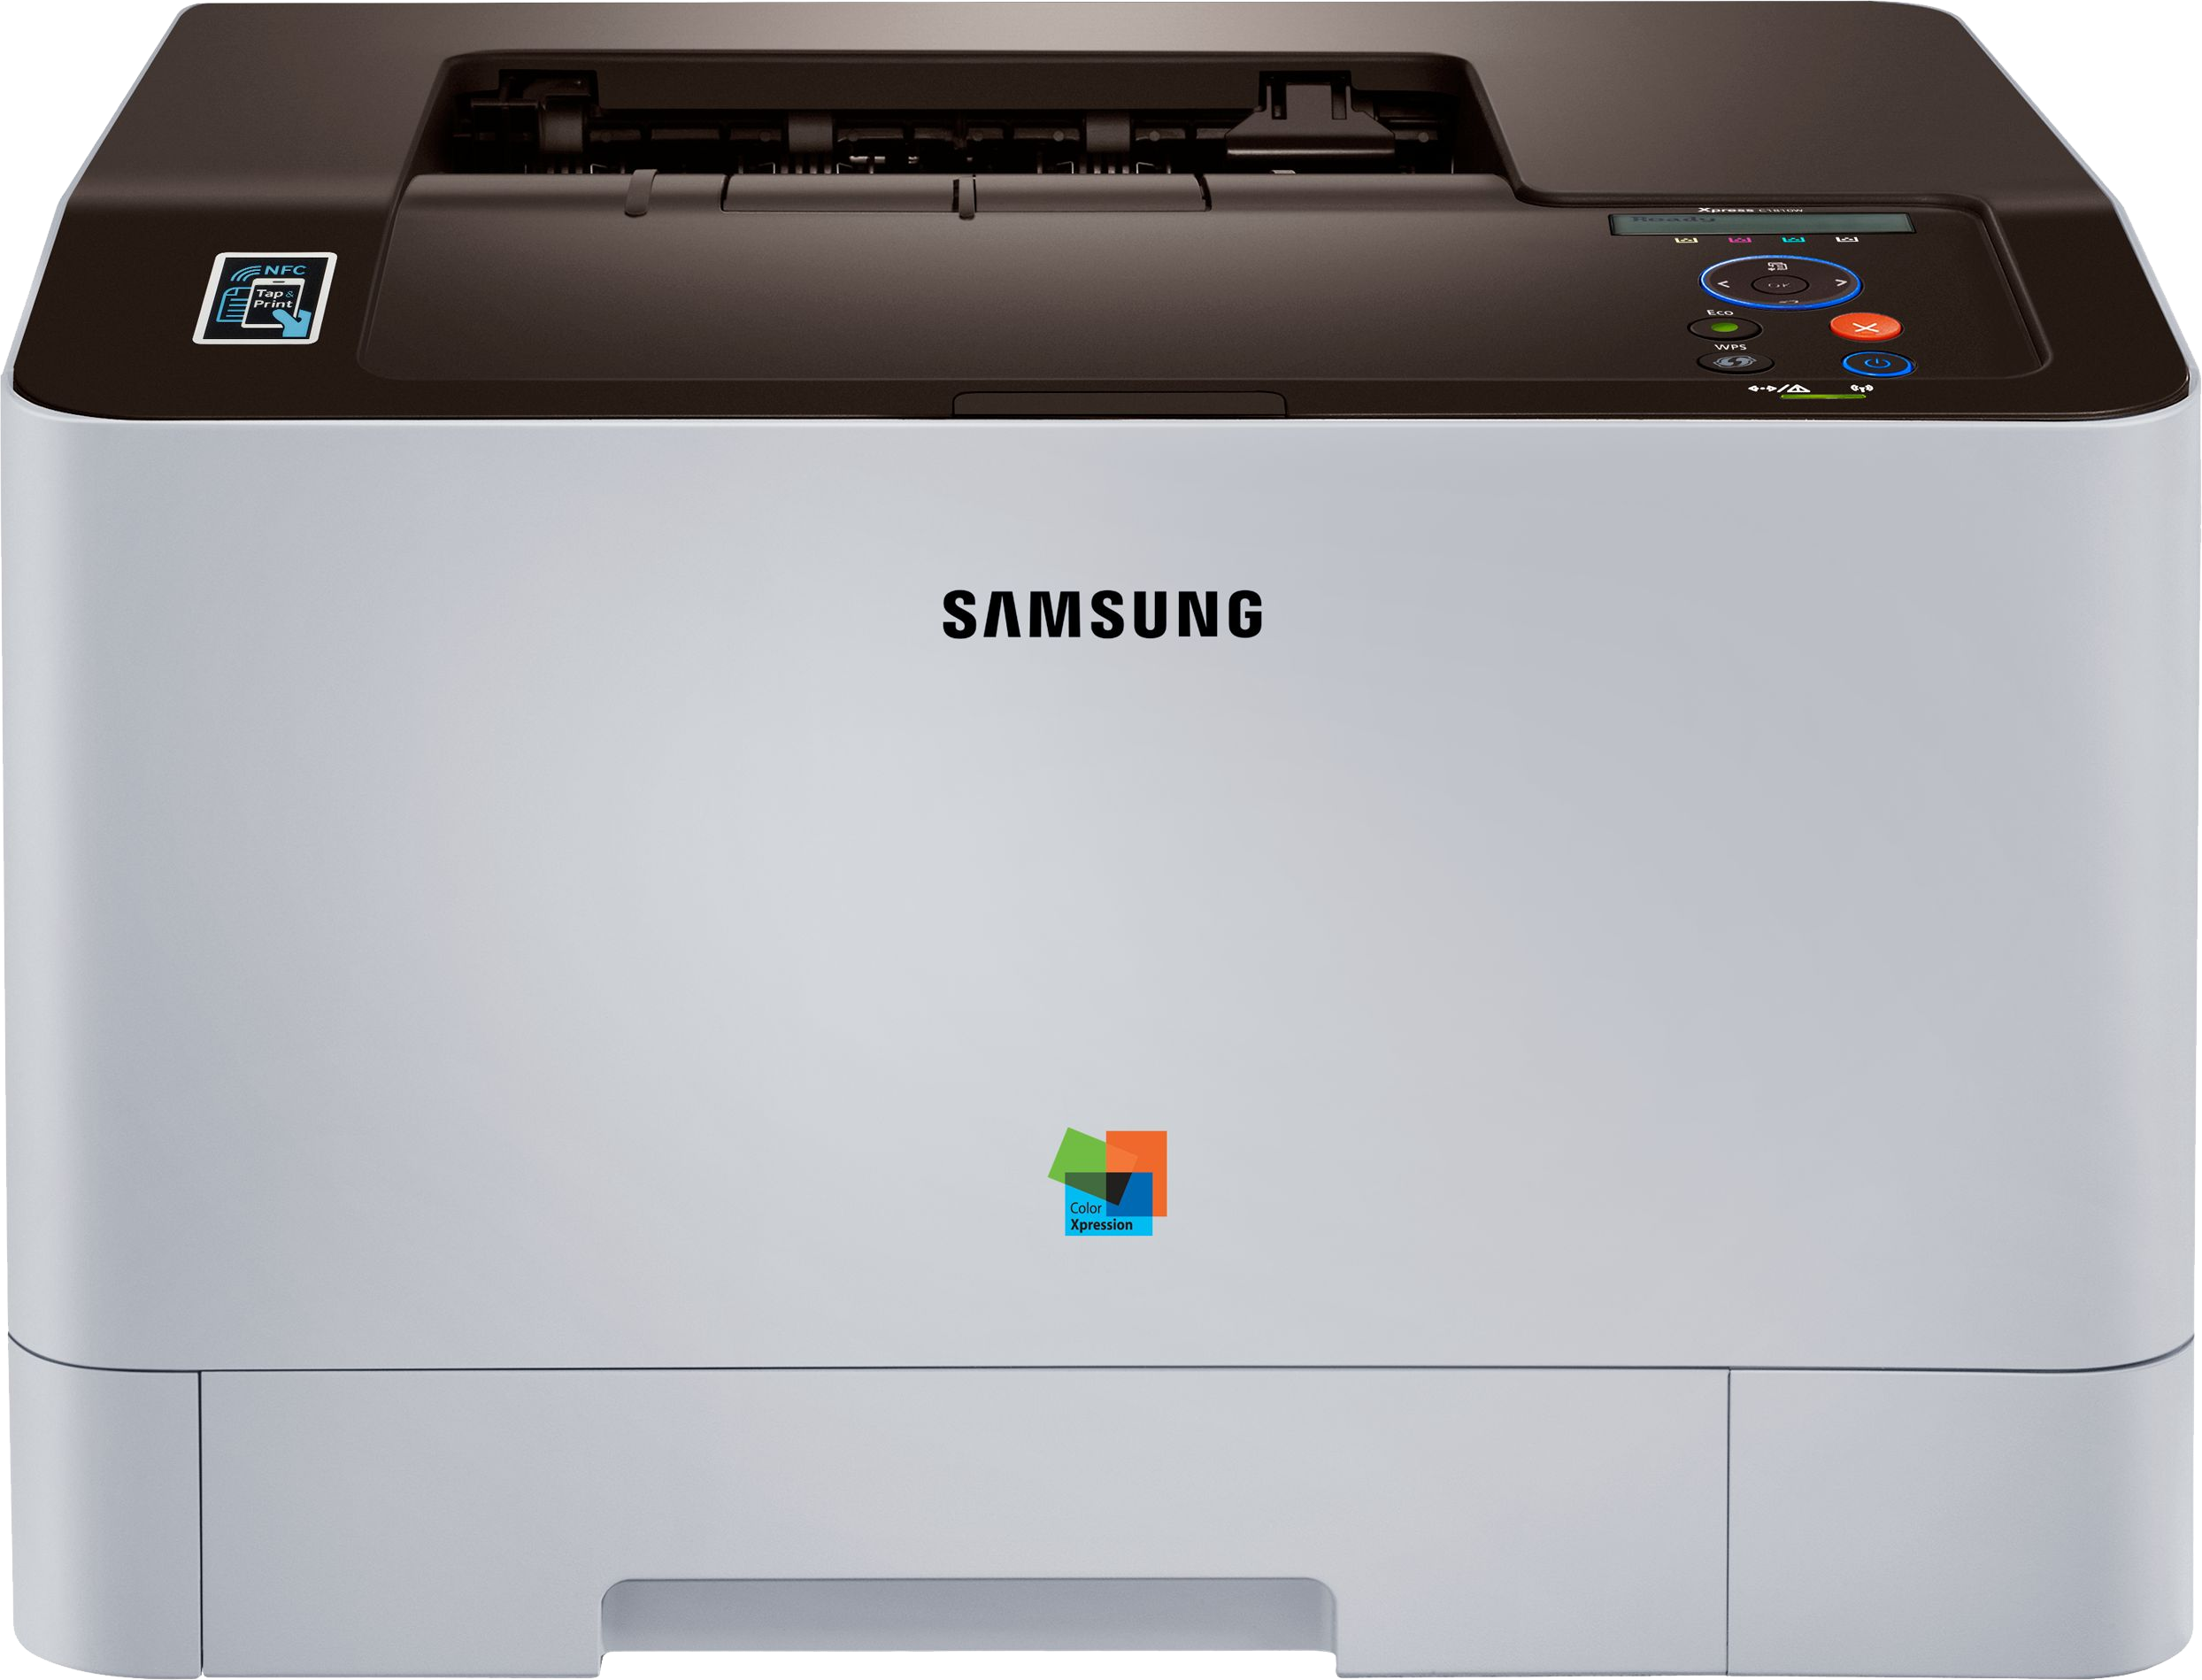 Лазерные принтеры samsung купить. Принтер Samsung CLP-415nw. Samsung SL c1810w. Принтер Samsung Xpress c1810w. Принтер Samsung 315.